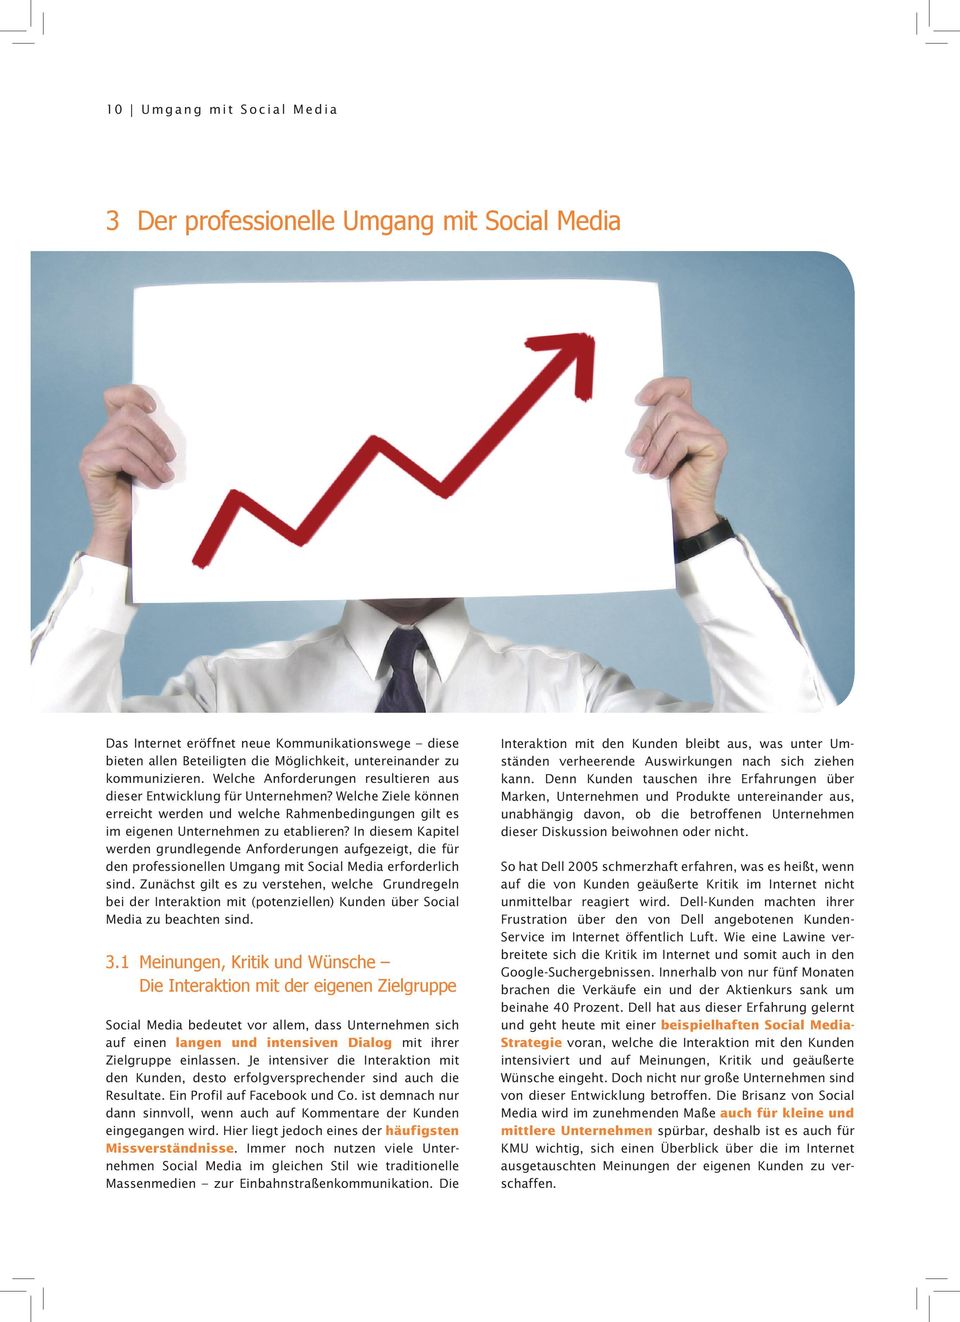 In diesem Kapitel werden grundlegende Anforderungen aufgezeigt, die für den professionellen Umgang mit Social Media erforderlich sind.